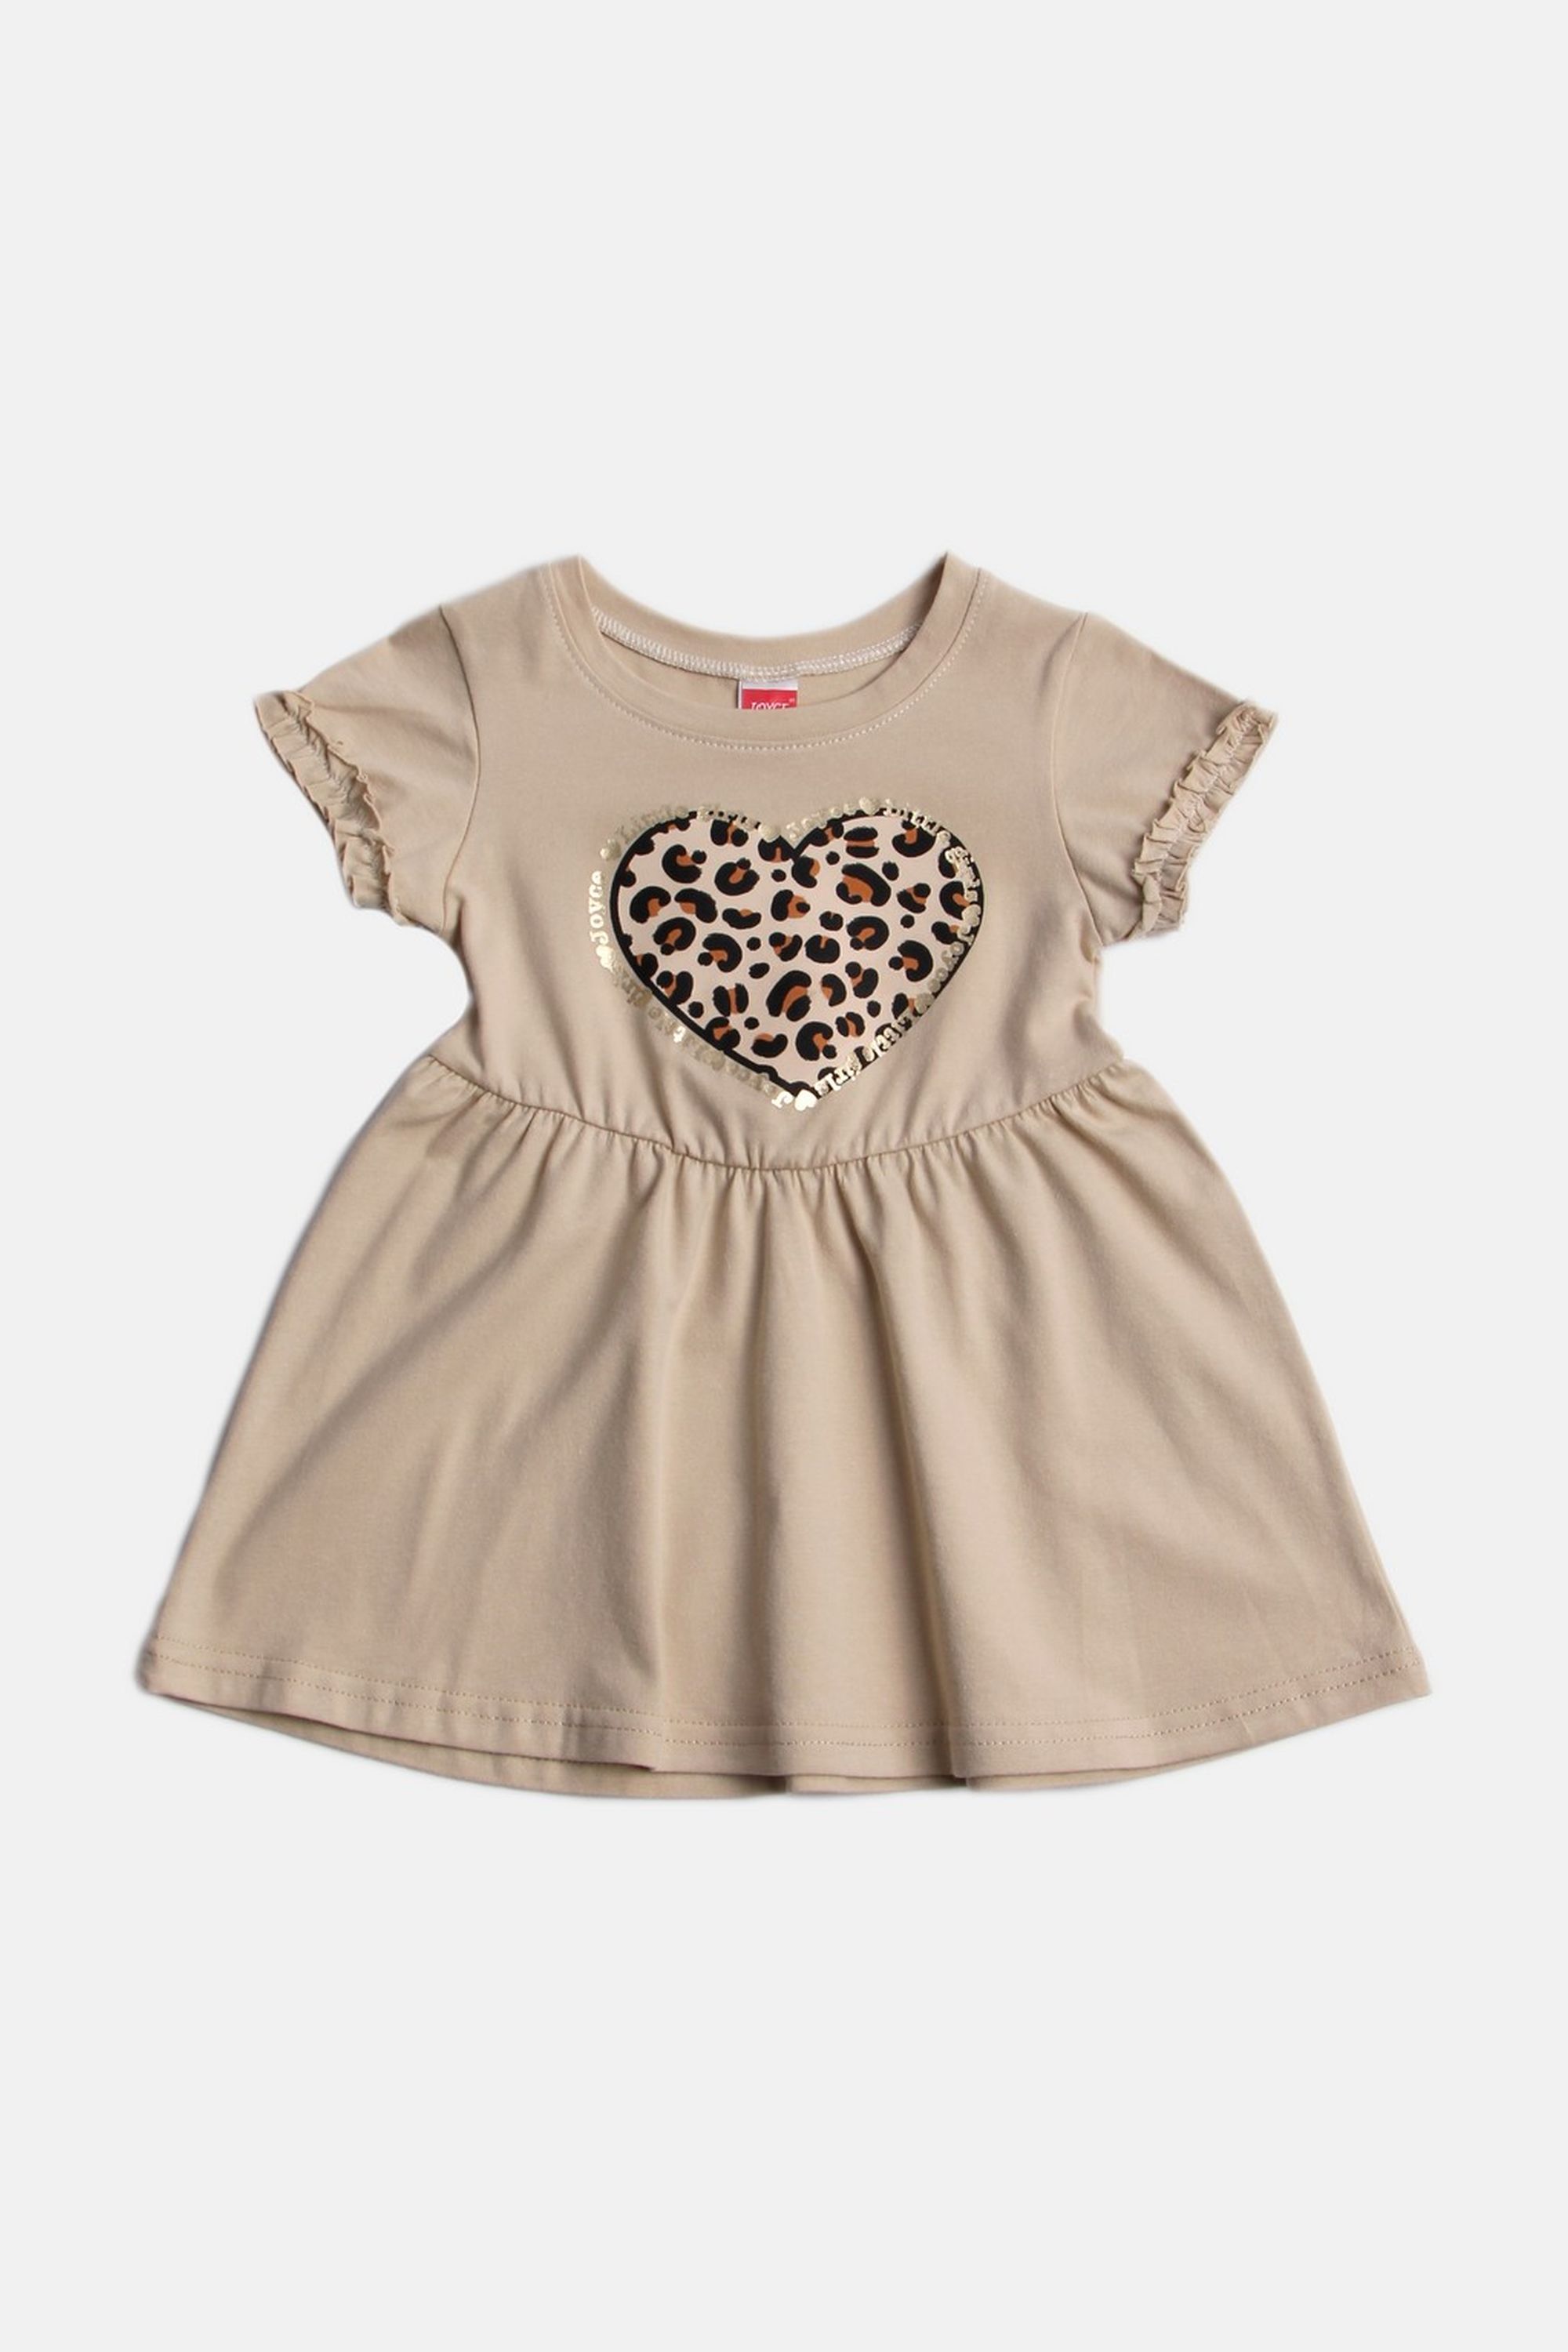 Dívčí bavlněné šaty "ANIMAL HEART"/Malinová, béžová Barva: Béžová, Velikost: vel. 2 (86/92 cm)